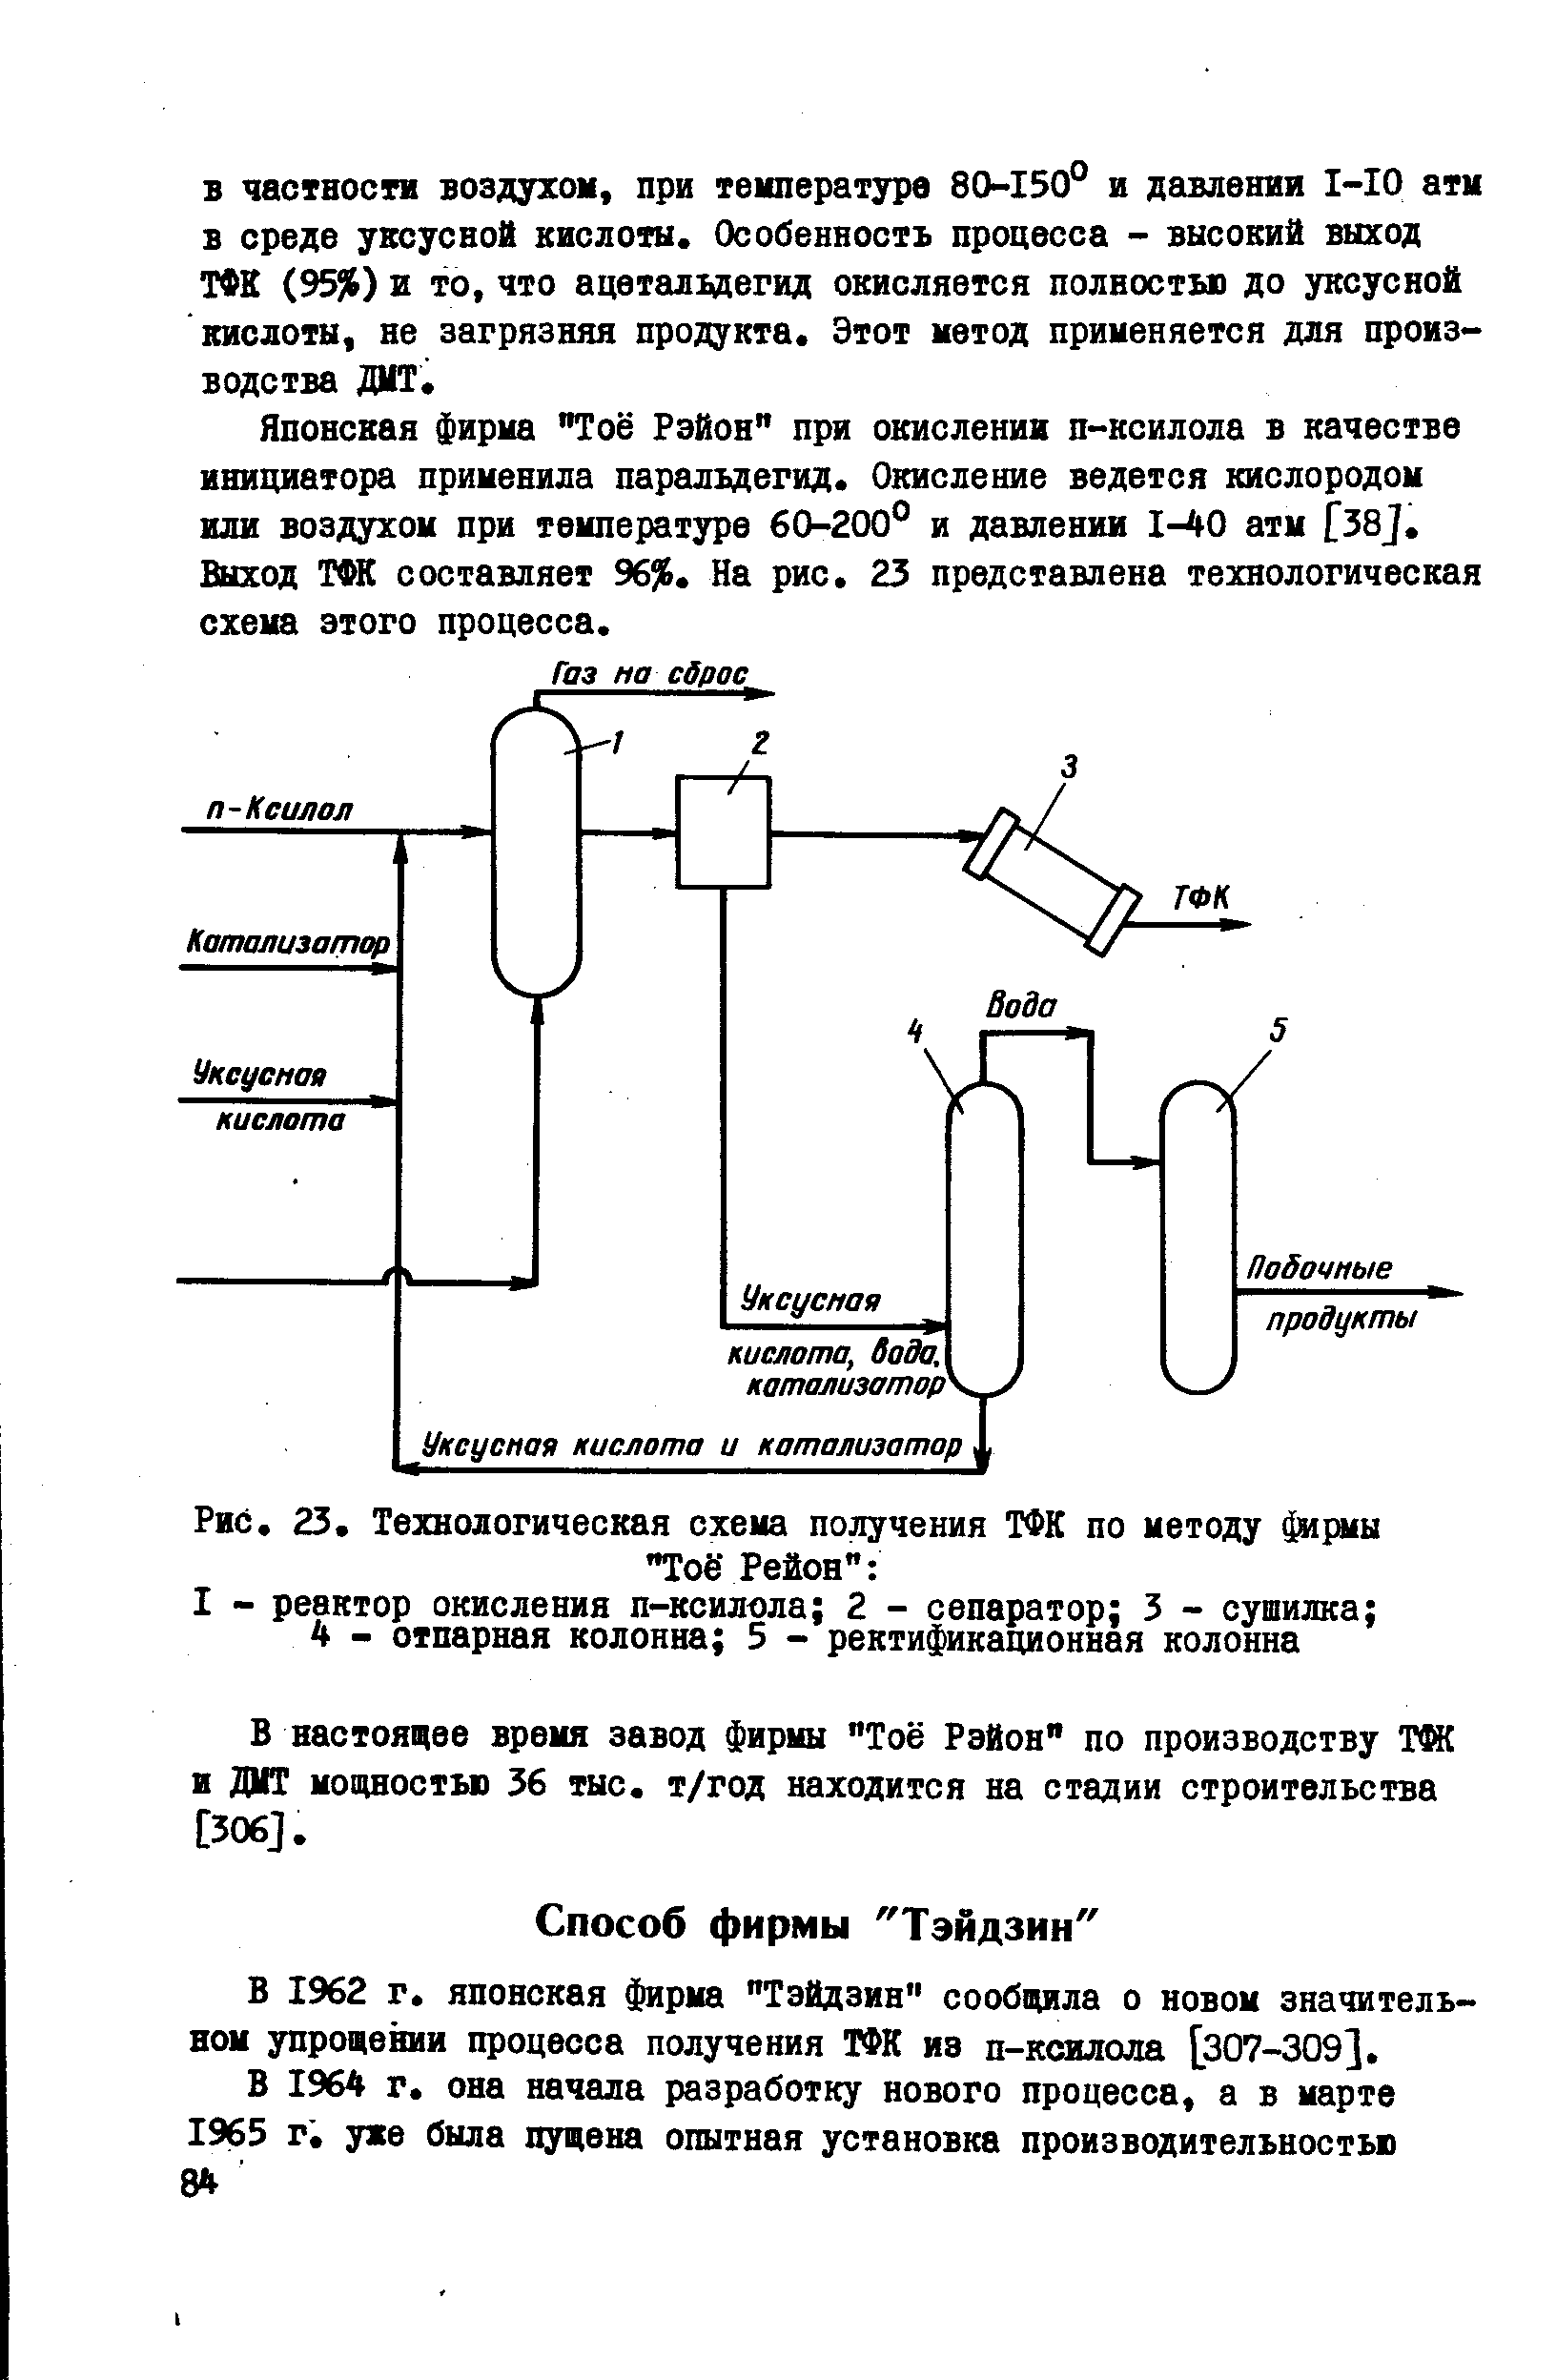 В 1962 г. японская фирма Тэйдзин сообщила о новом значительном упрощении процесса получения ТФК из п-ксилола [307-309].